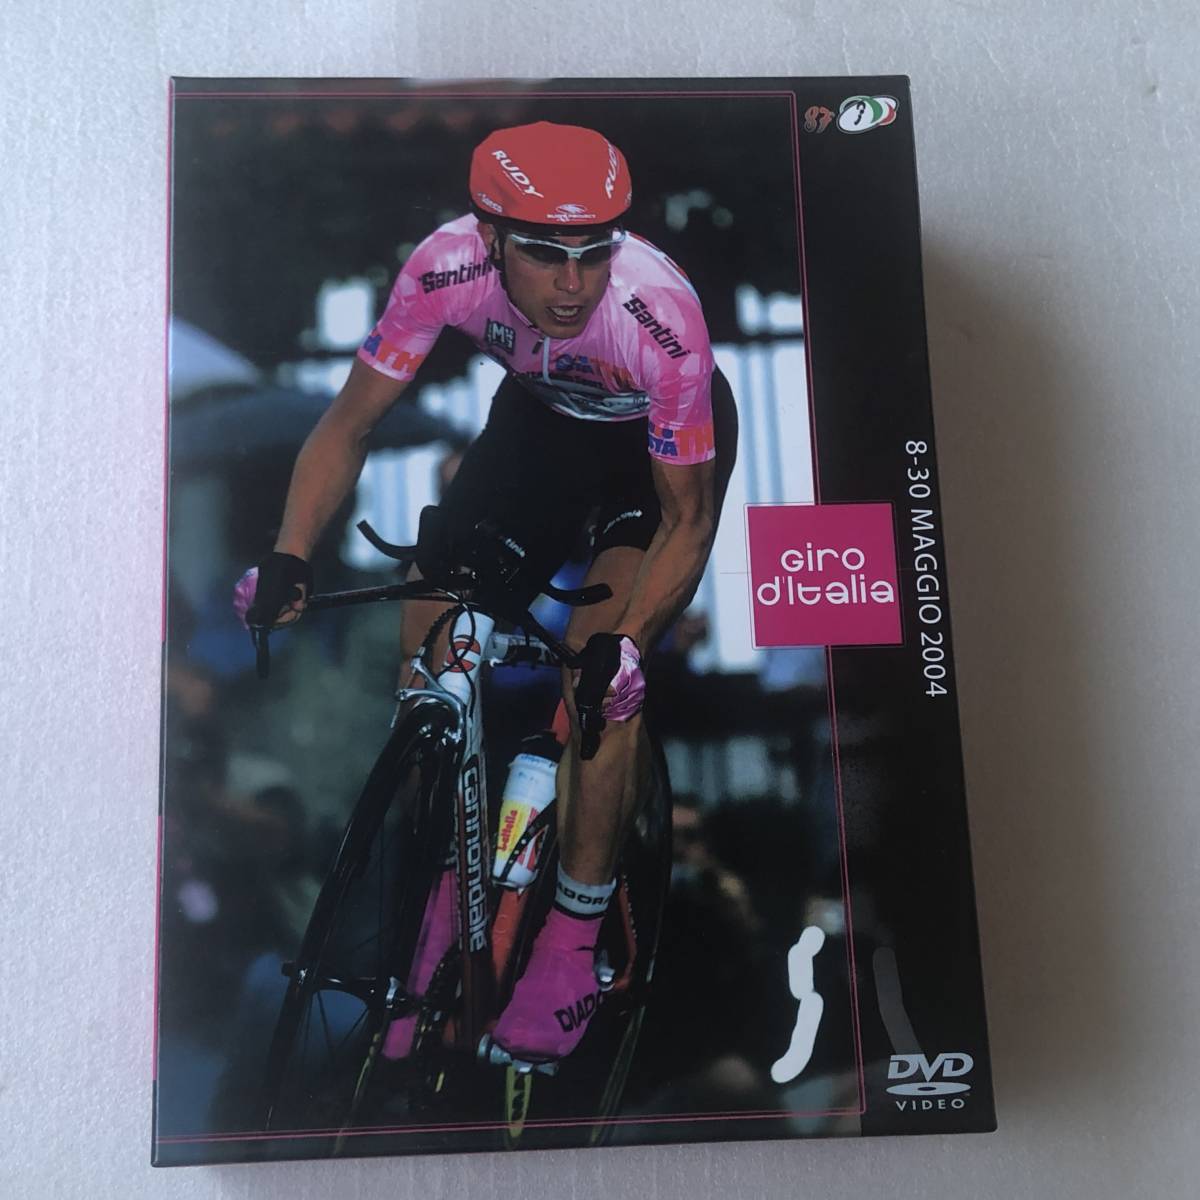  б/у DVD Giro d\'Italiajiro*te* Италия 2004 специальный BOX 3 листов комплект SSBX-2137 бесплатная доставка 